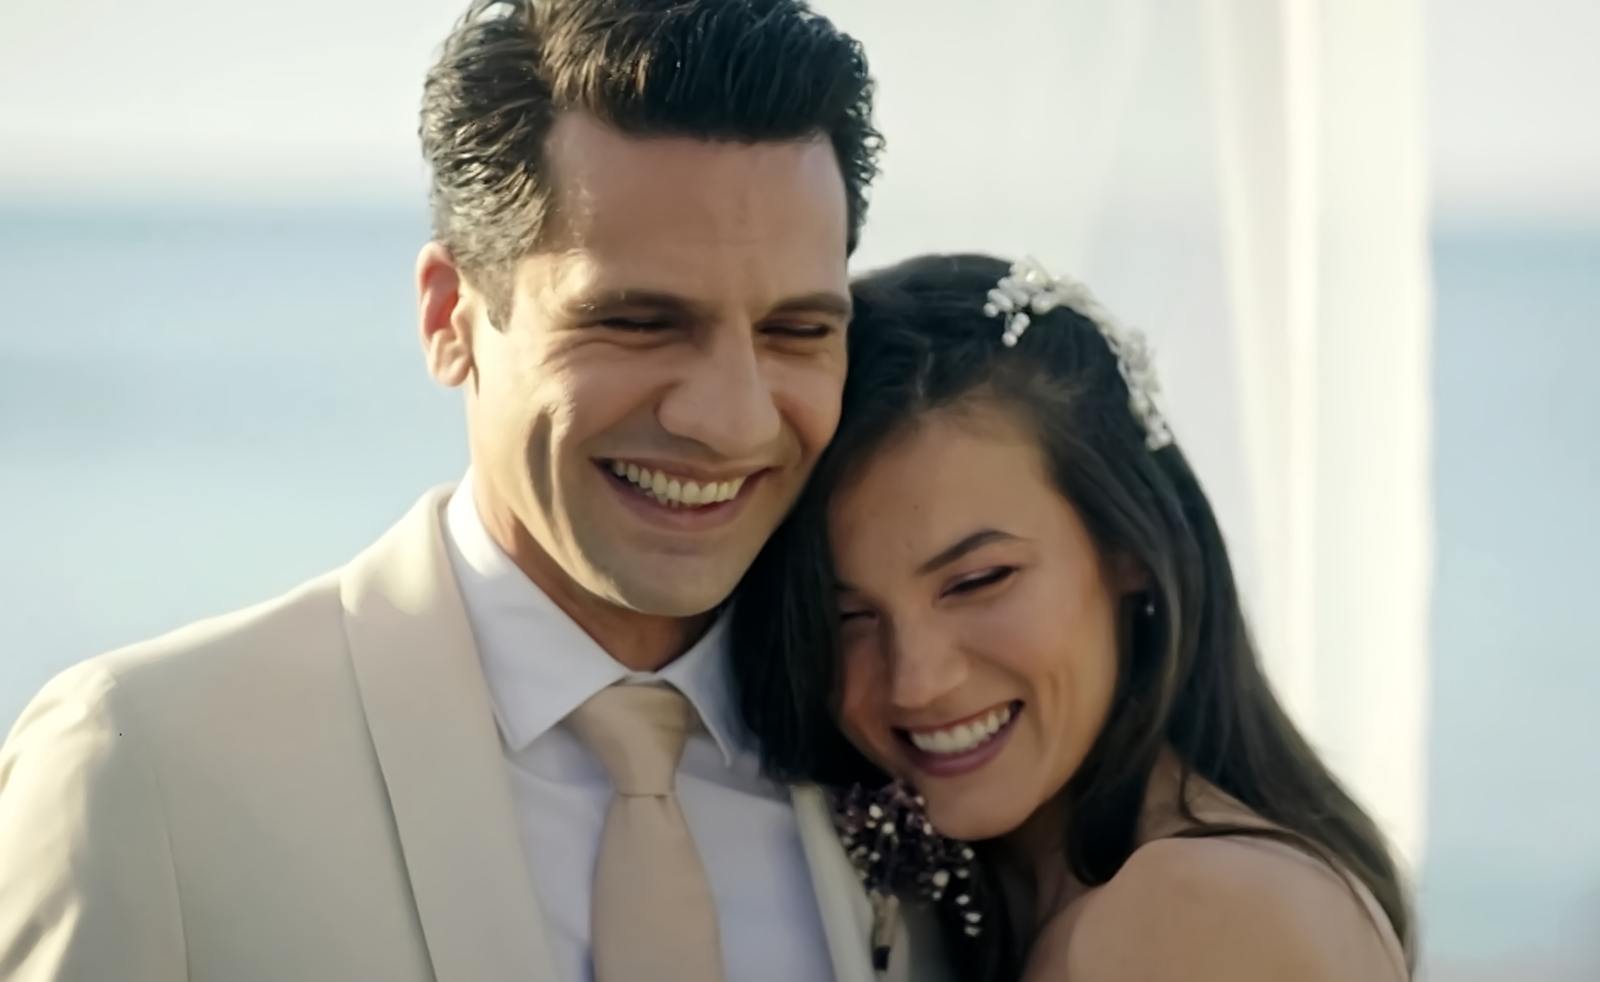 Pınar Deniz y Kaan Urgancıoğlu dan vida a la pareja protagonista de Secretos de familia